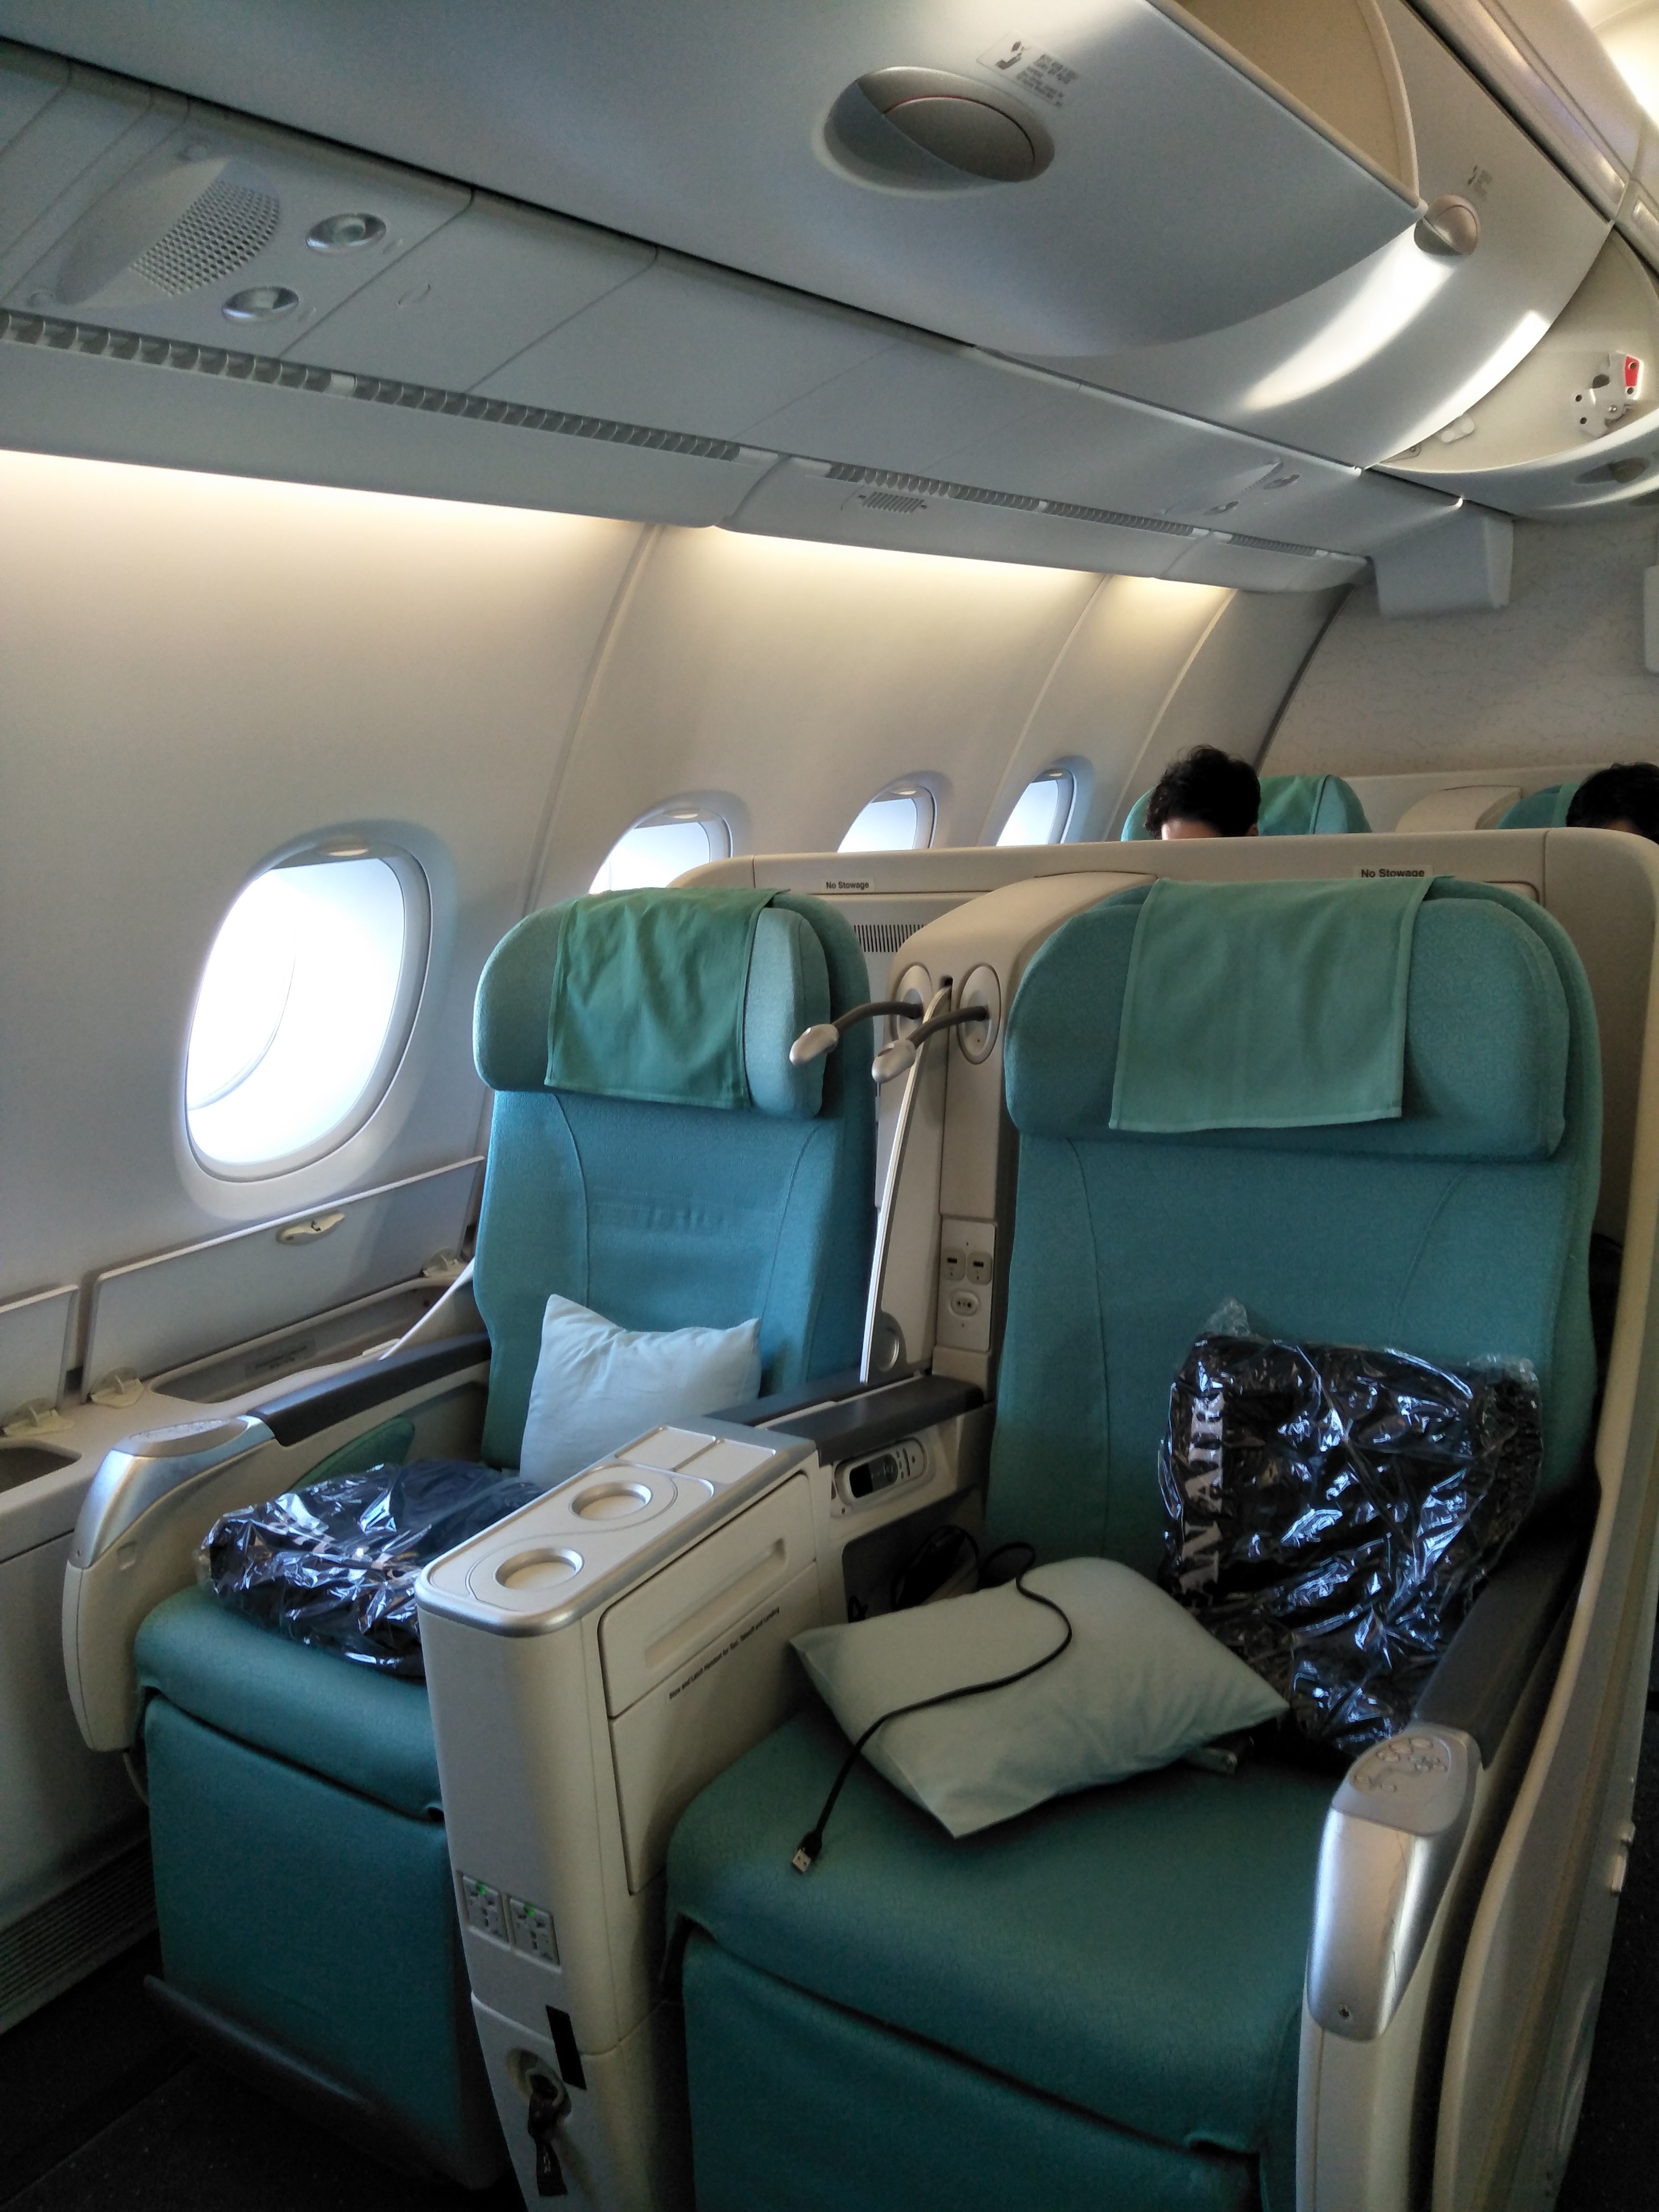 Korean Air Business Class A380